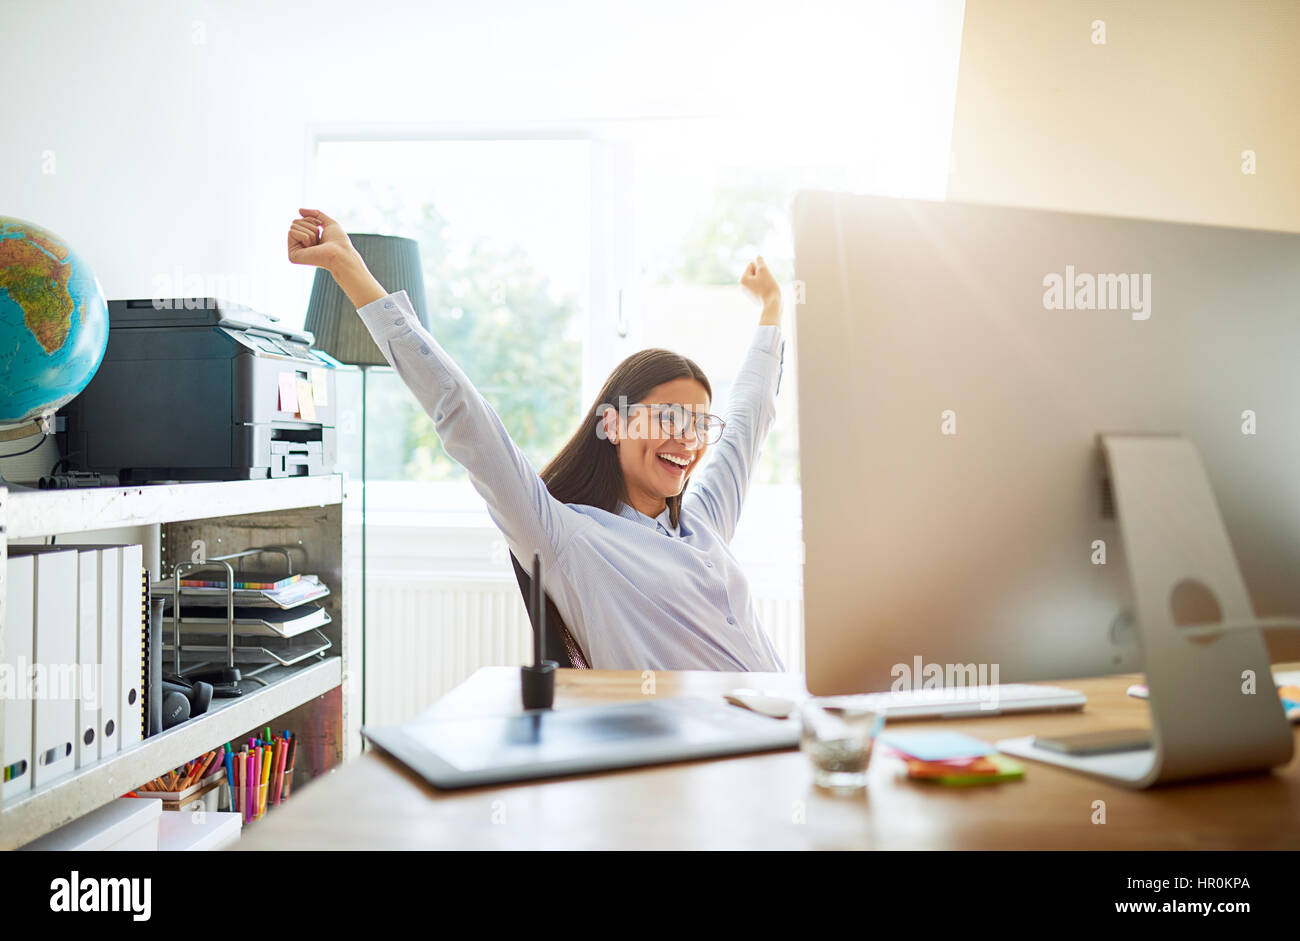 Einzelne Jugendliche begeistert Frau feiern etwas mit beiden Armen nach oben verlängert, sitzend am Schreibtisch im kleinen Büro Stockfoto